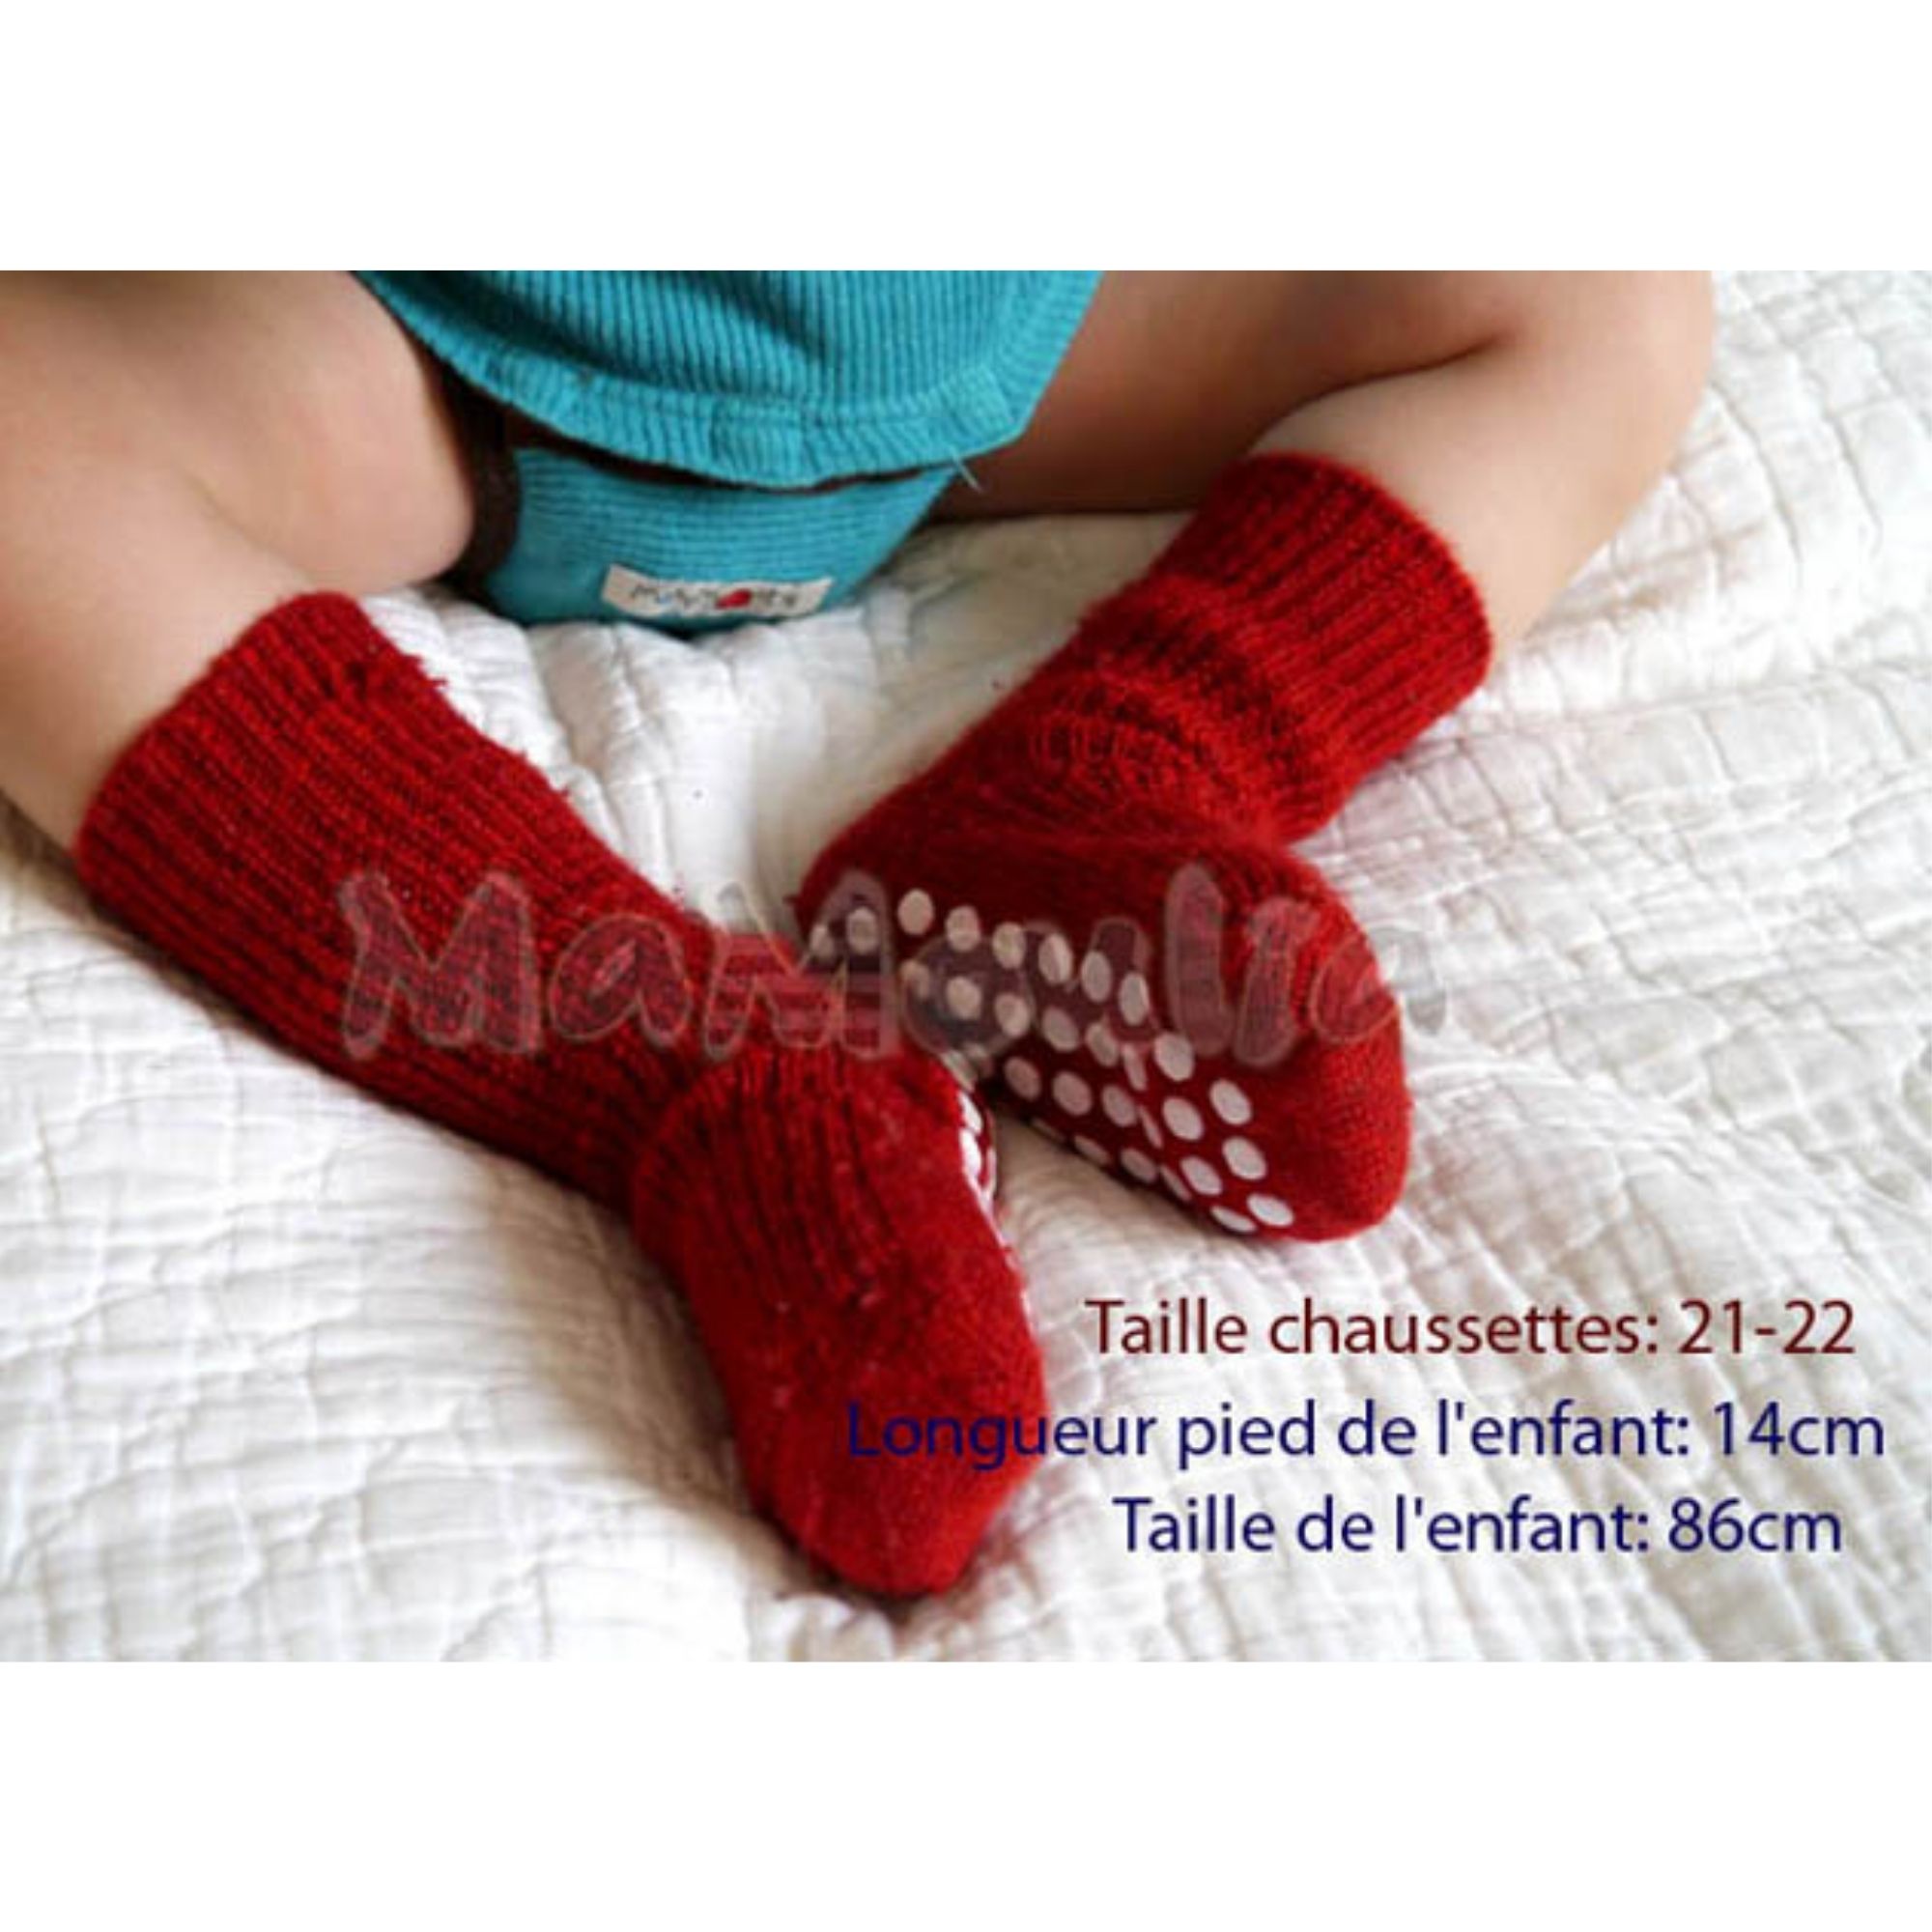 782-chaussettes-pure-laine-ecologique-hirsch-natur-bebe-enfant-maison-de-mamoulia-antiderapantes-rouge--